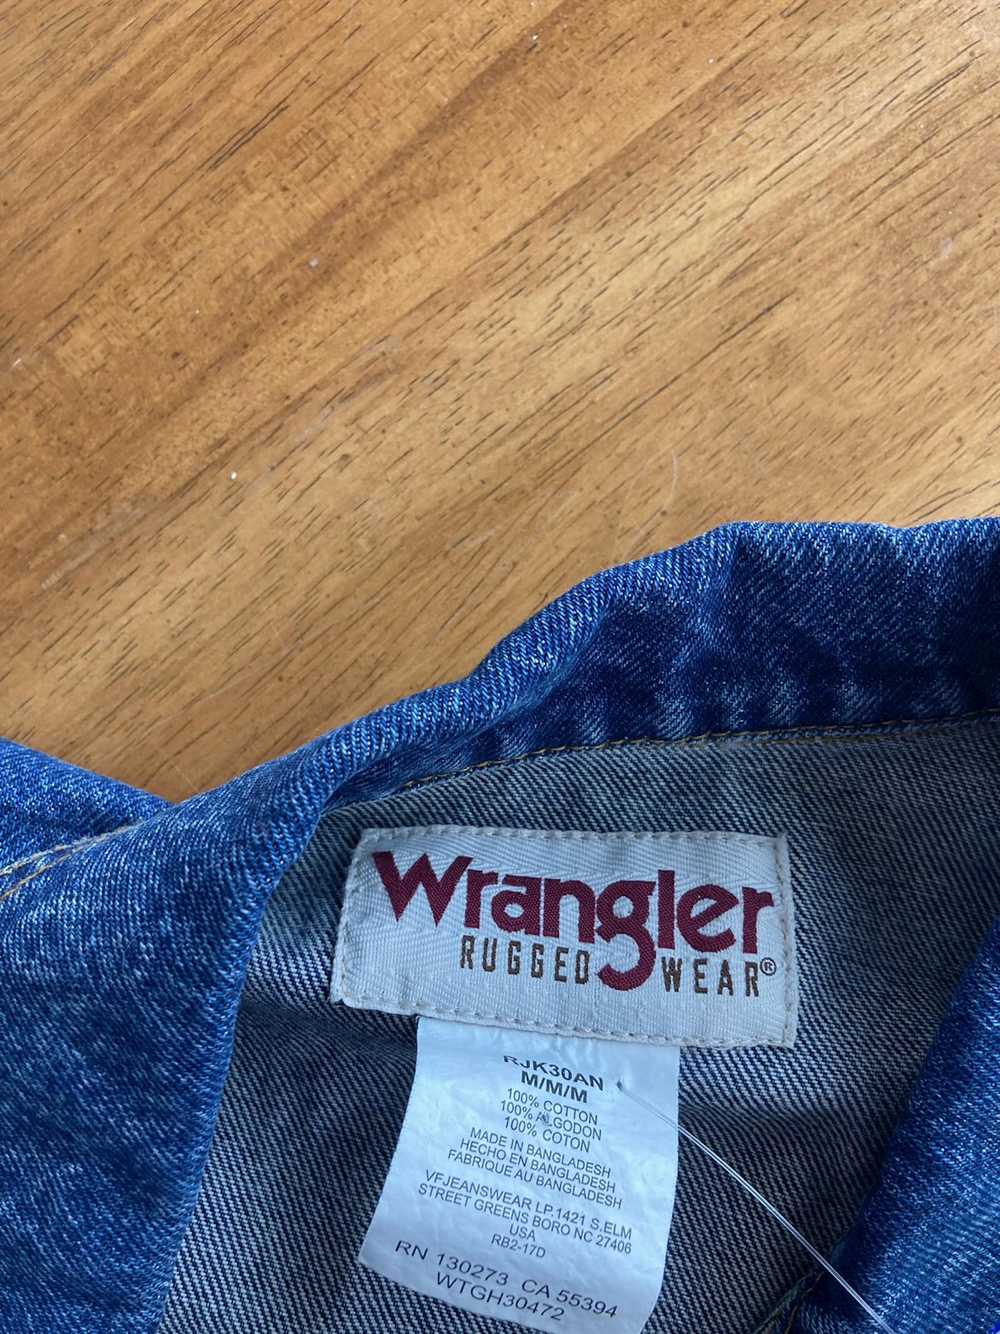 Wrangler Wrangler Denim Jacket - image 4